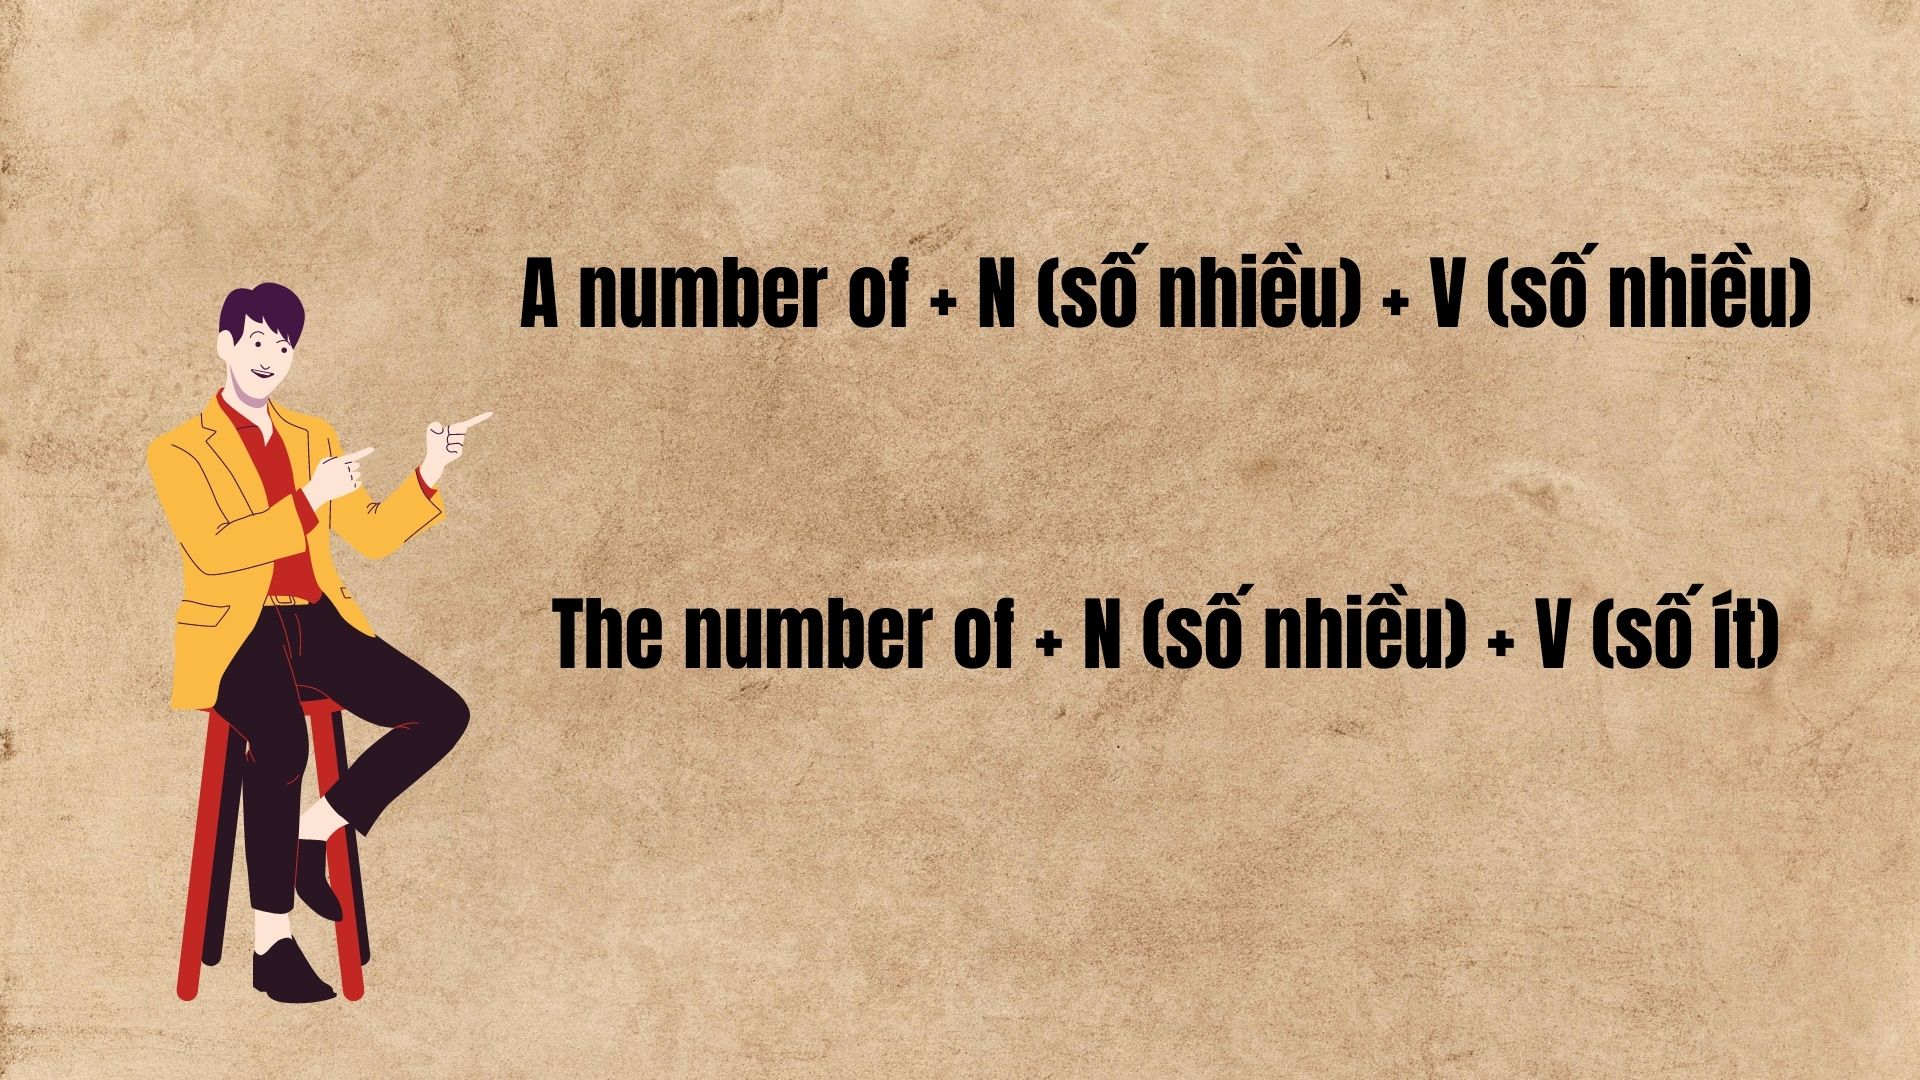 Cấu trúc ngữ pháp của 2 lượng từ A number of và The number of